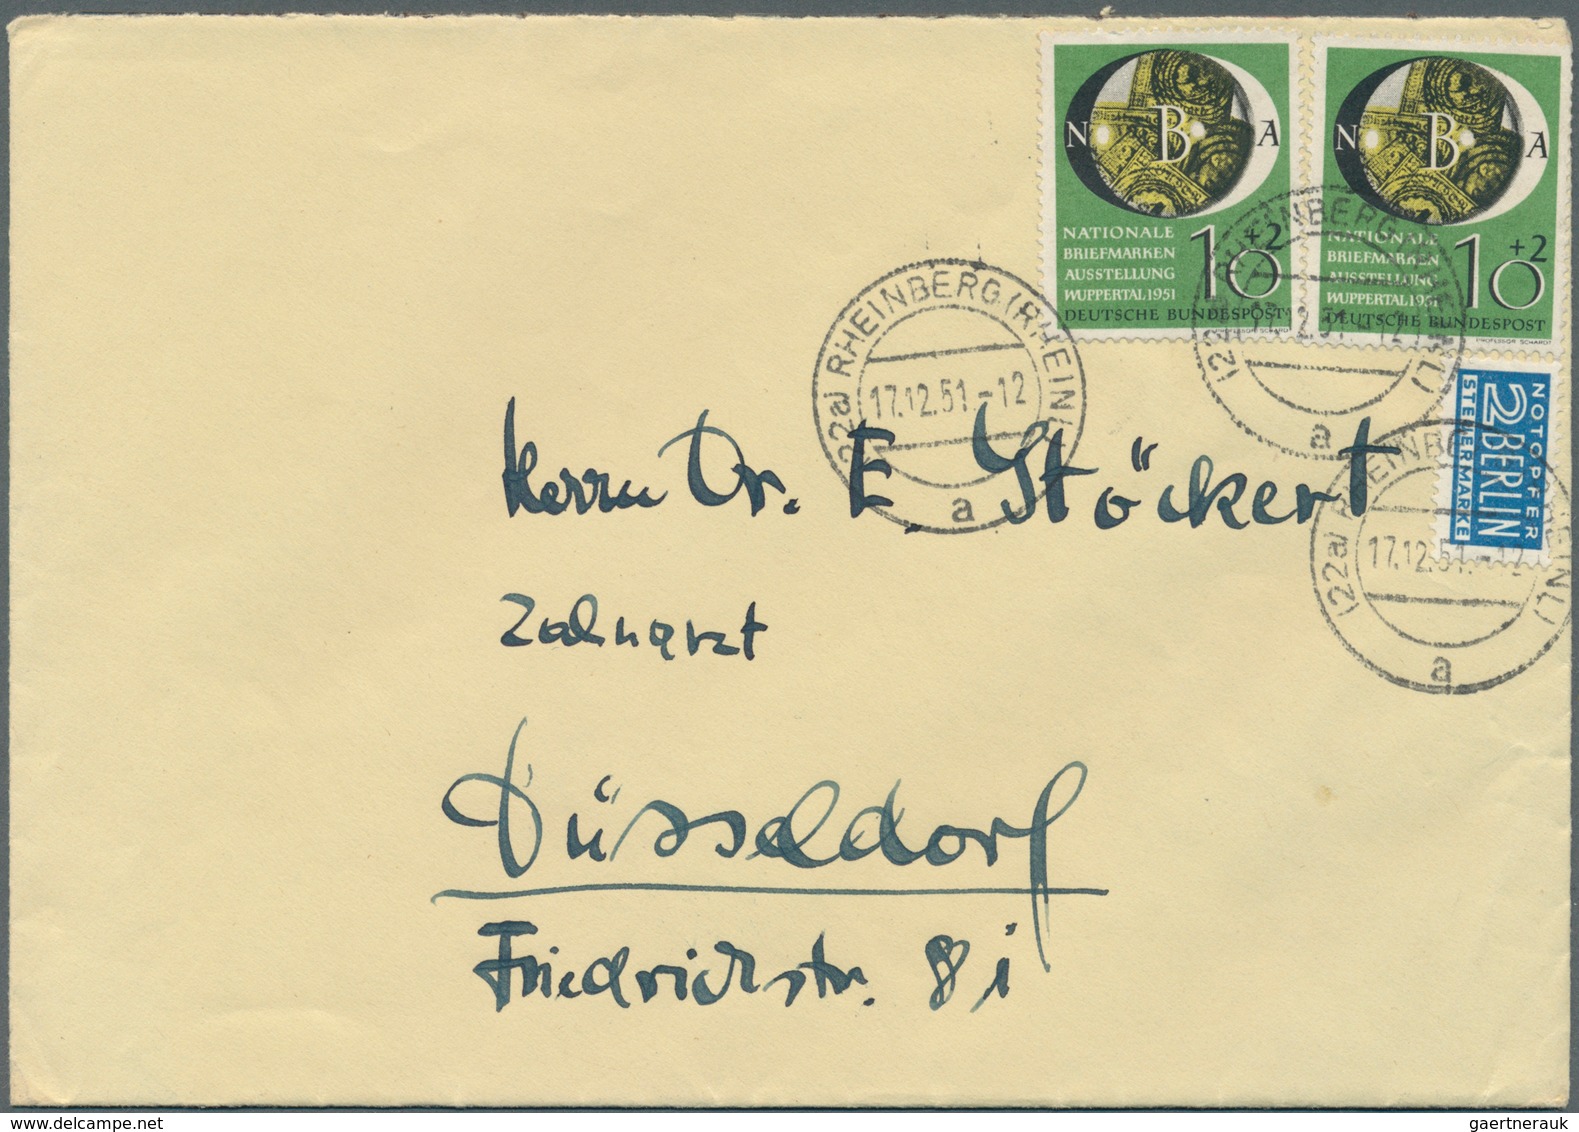 30113 Bundesrepublik Deutschland: 1949/1955, Partie mit 23 besseren Belegen mit Sondermarken-Frankatur, da